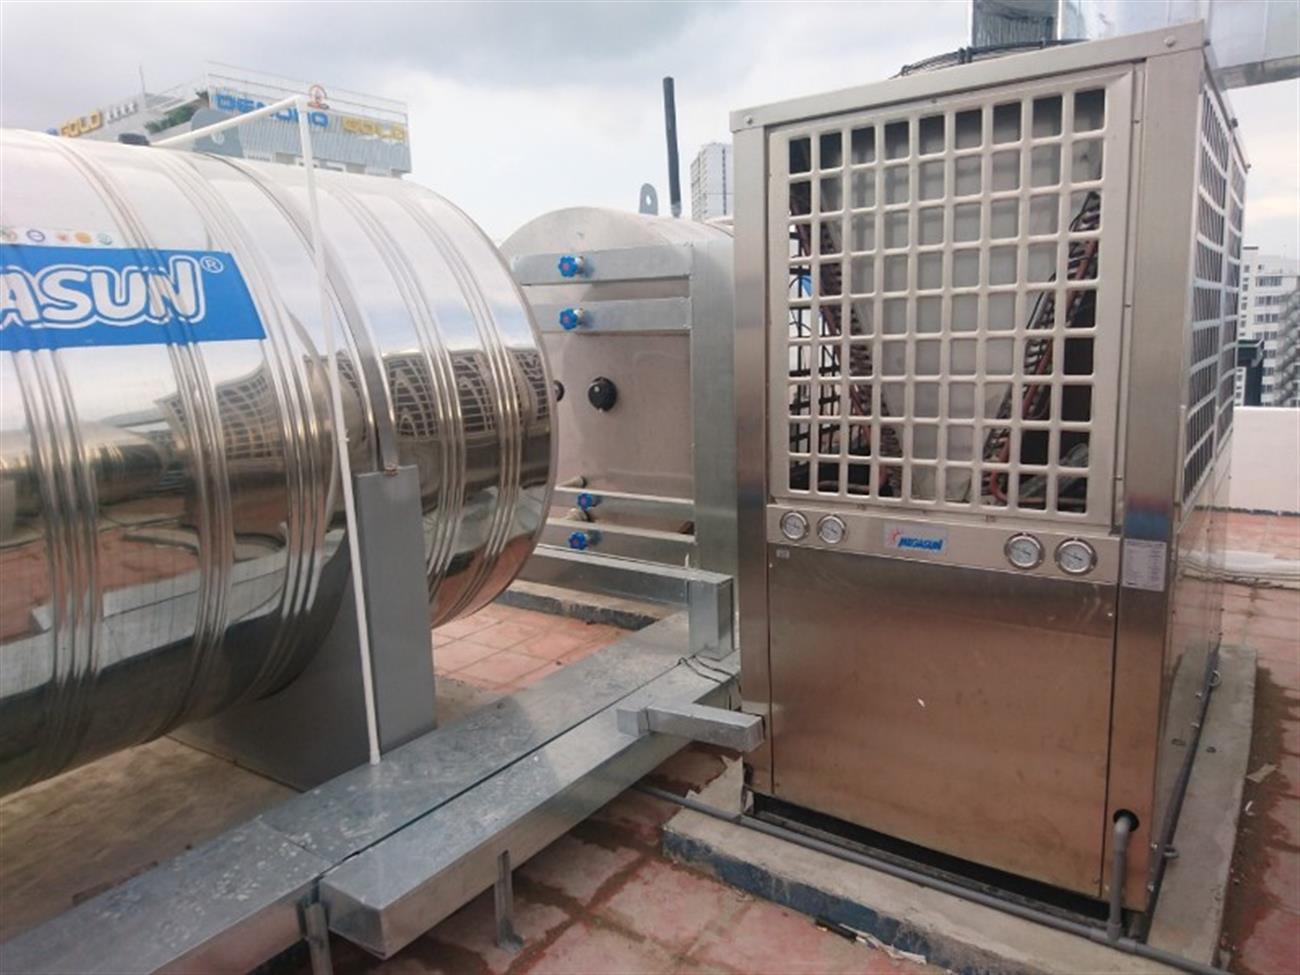 Thi công lắp đặt hệ thống máy nước nóng trung tâm chuyên nghiệp tại Thái Bình - Ảnh 1